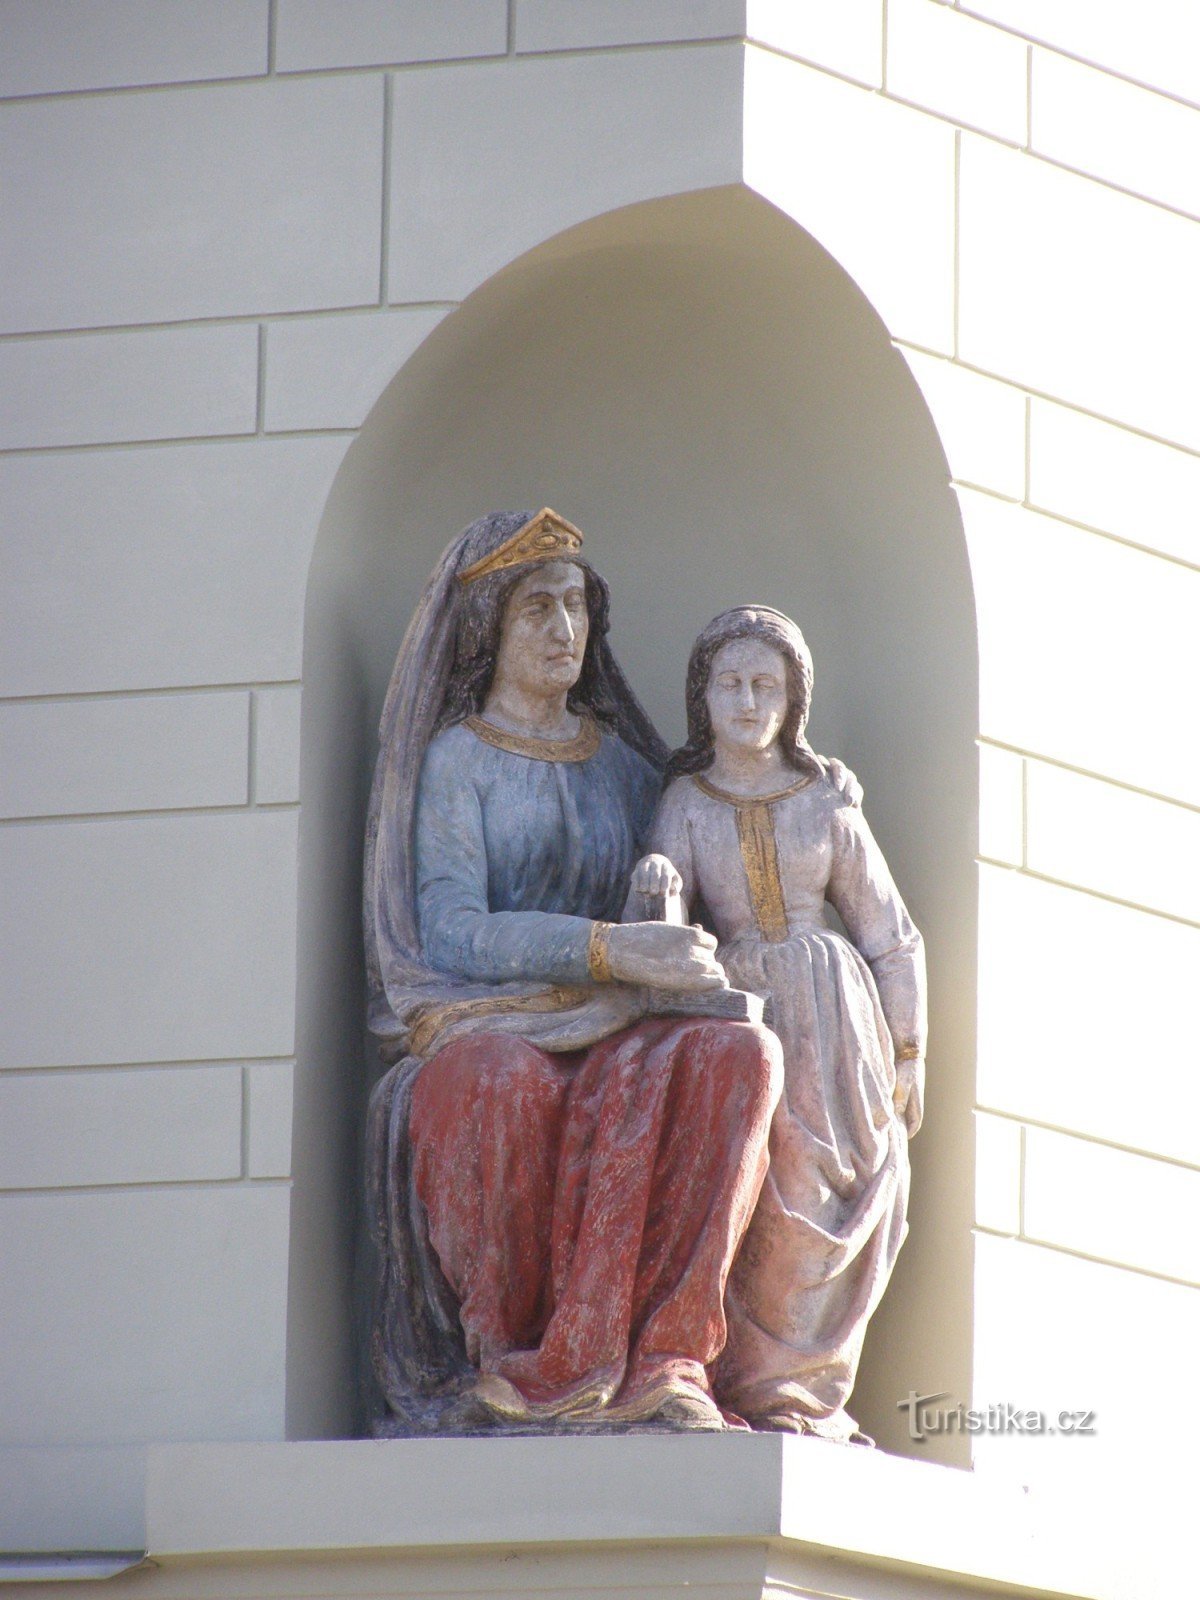 Týnec nad Labem - casa burguesa No. 158 con la estatua de St. Ana enseñando a la Virgen María